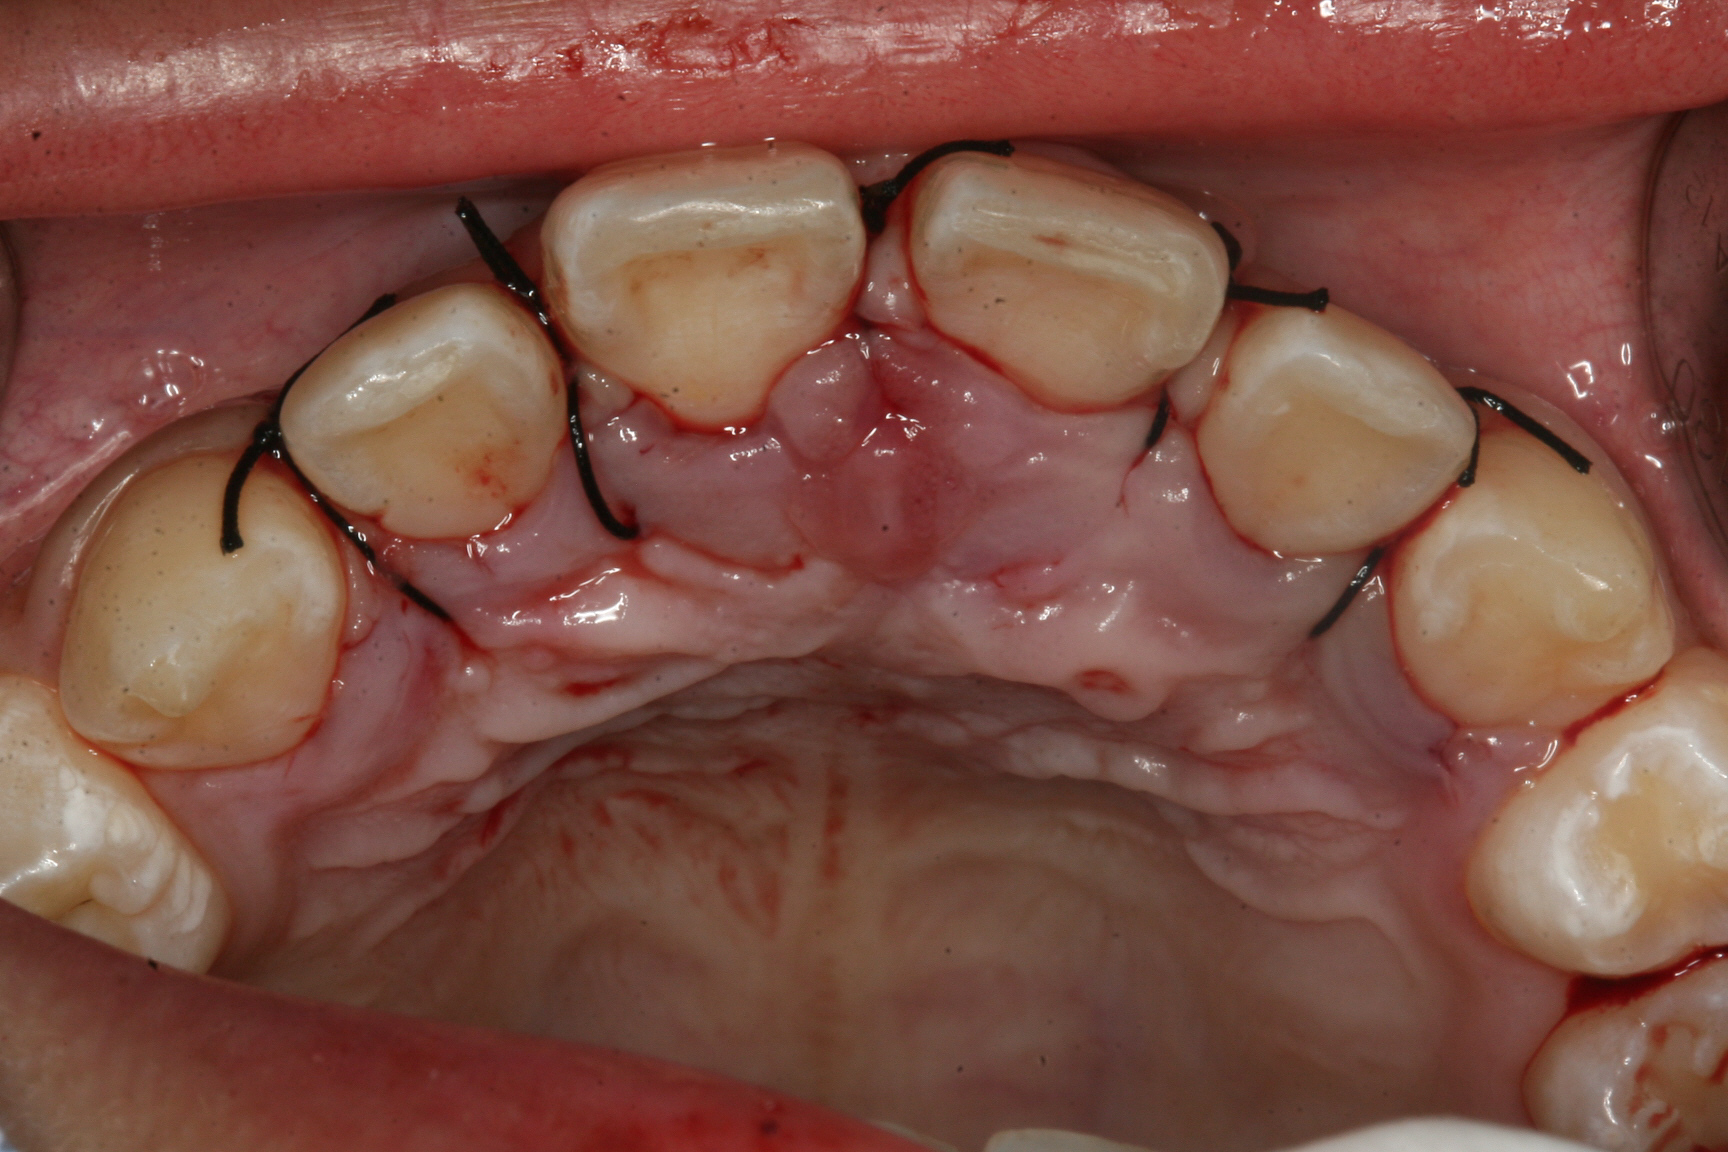 鼻腔直下に角状突起をもつ上顎正中完全埋伏逆性過剰歯の１例 森歯科医院